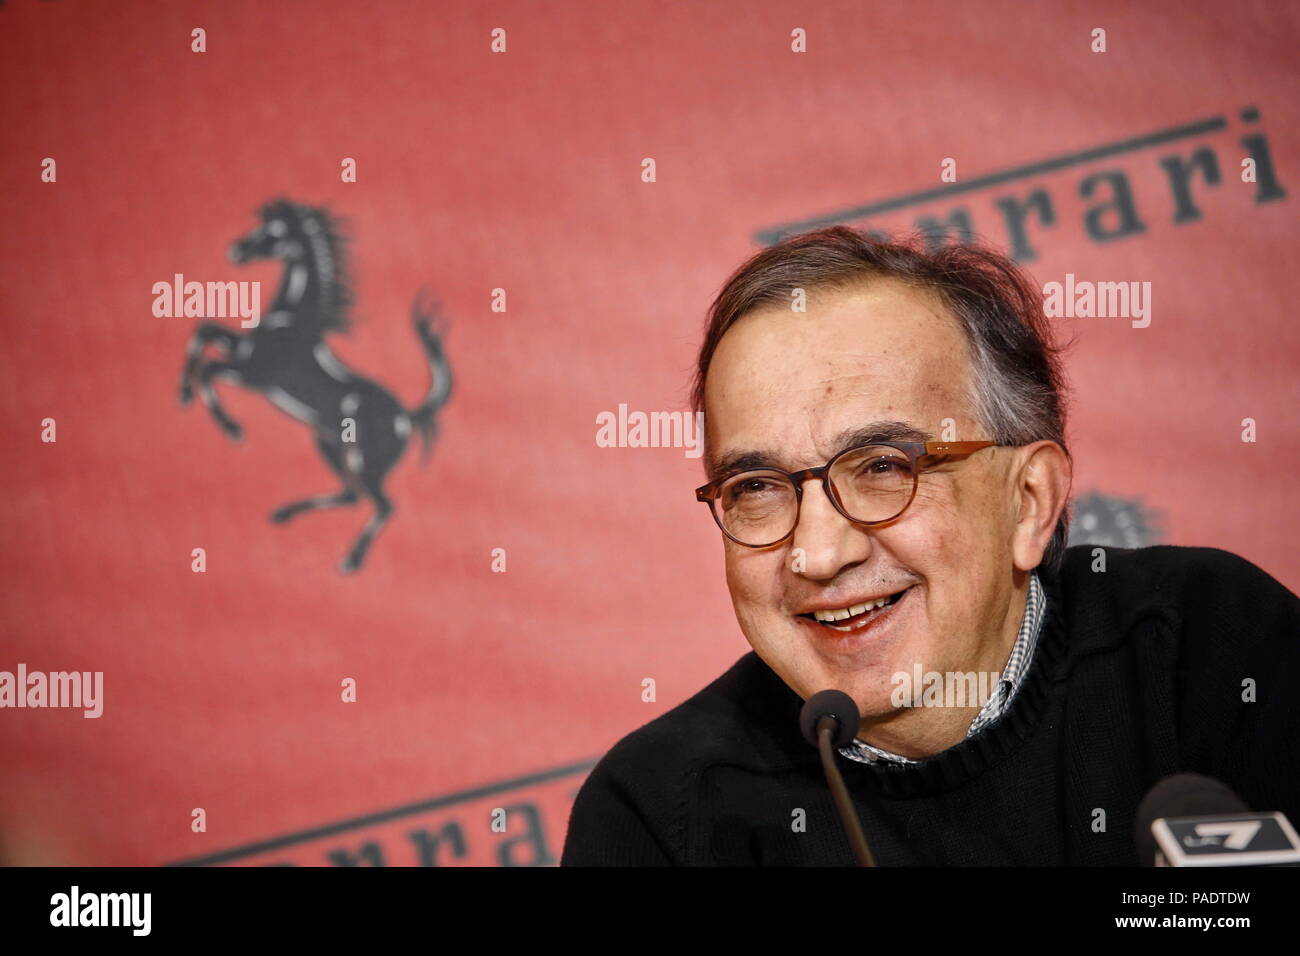 Mailand, Italien - Januar 2016: Sergio Marchionne, Chief Executive Officer von FCA spricht während einer Pressekonferenz von Ferrari Stockfoto